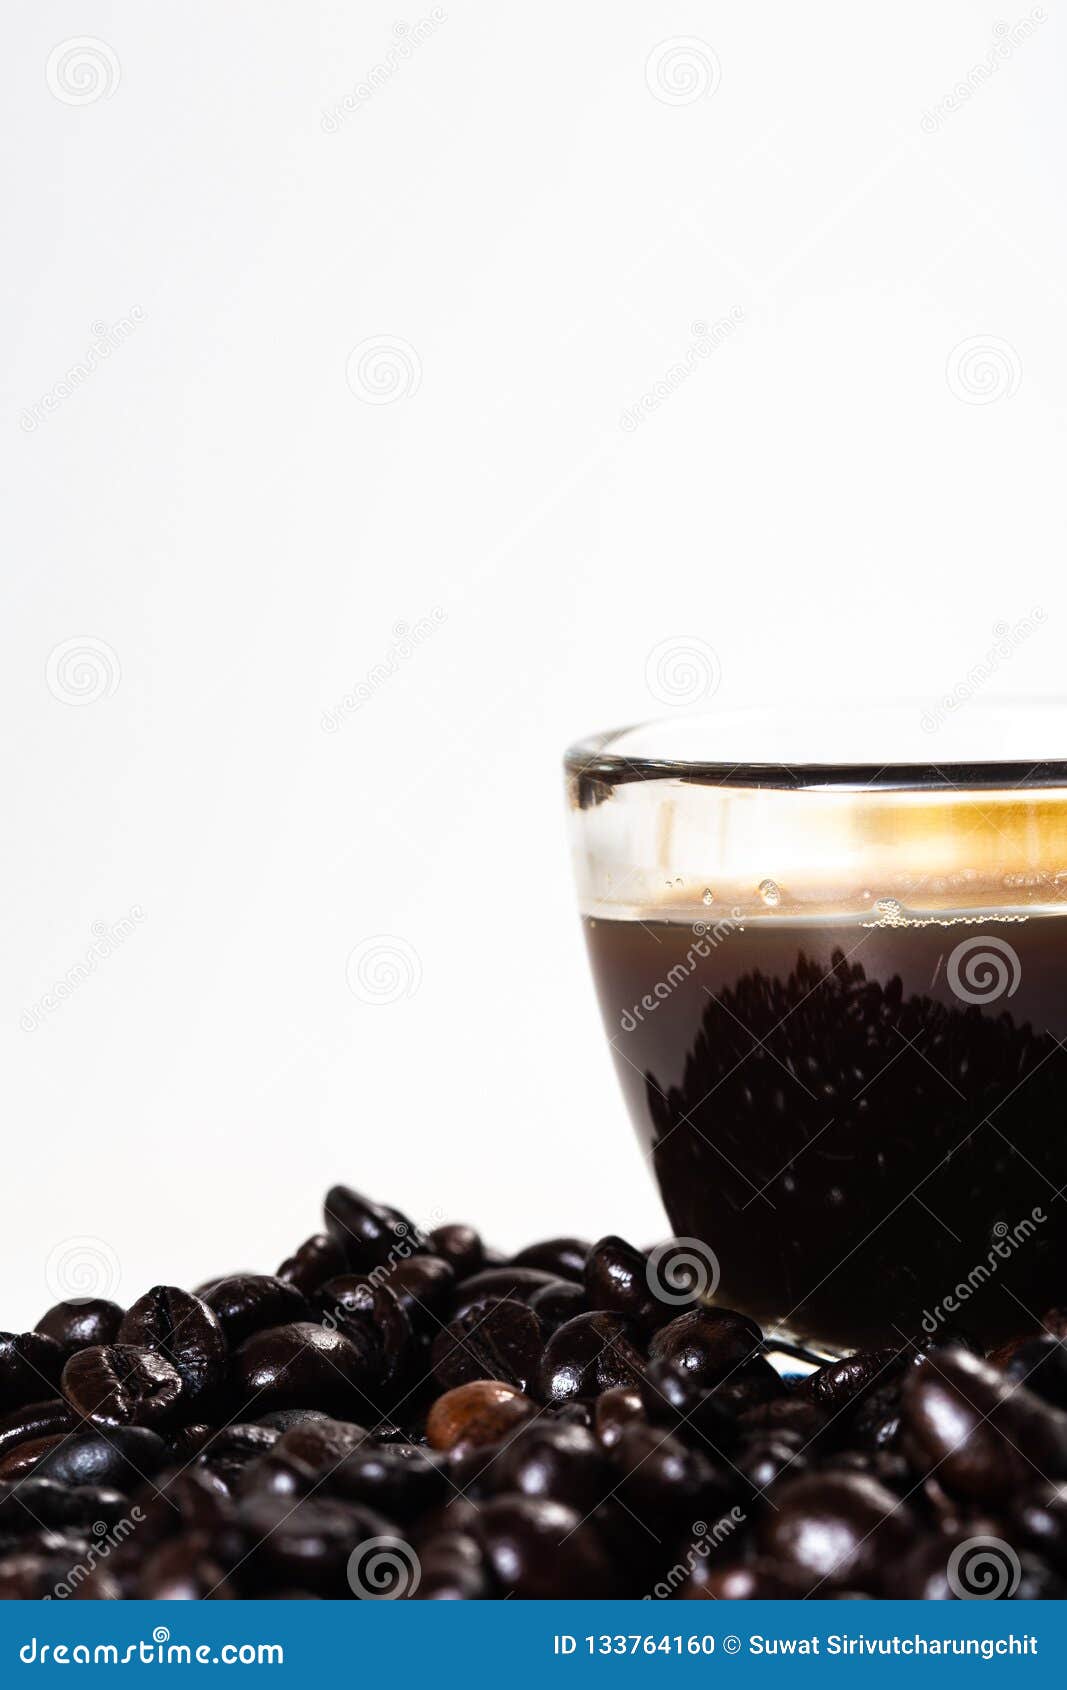 the glass mug of coffee and coffee bean